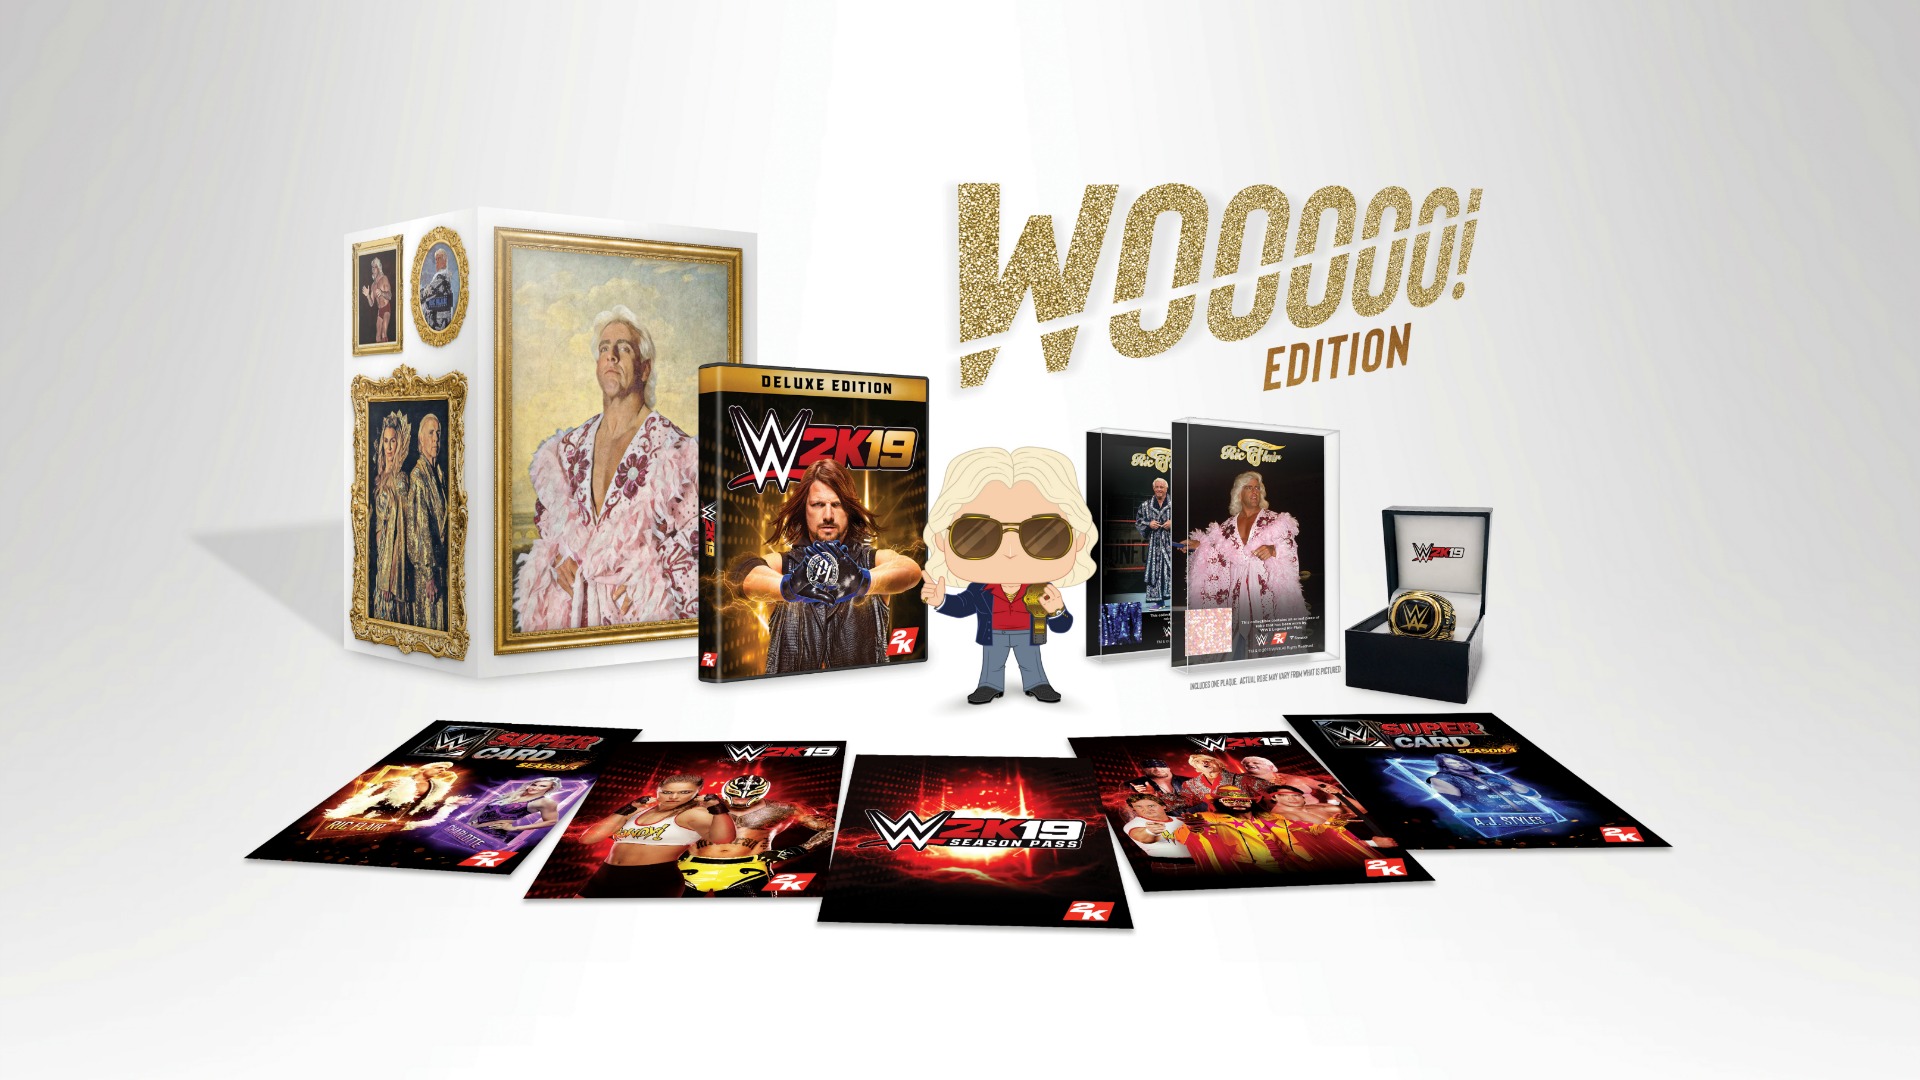 WWE 2K19 Wooooo! Collectors Edition